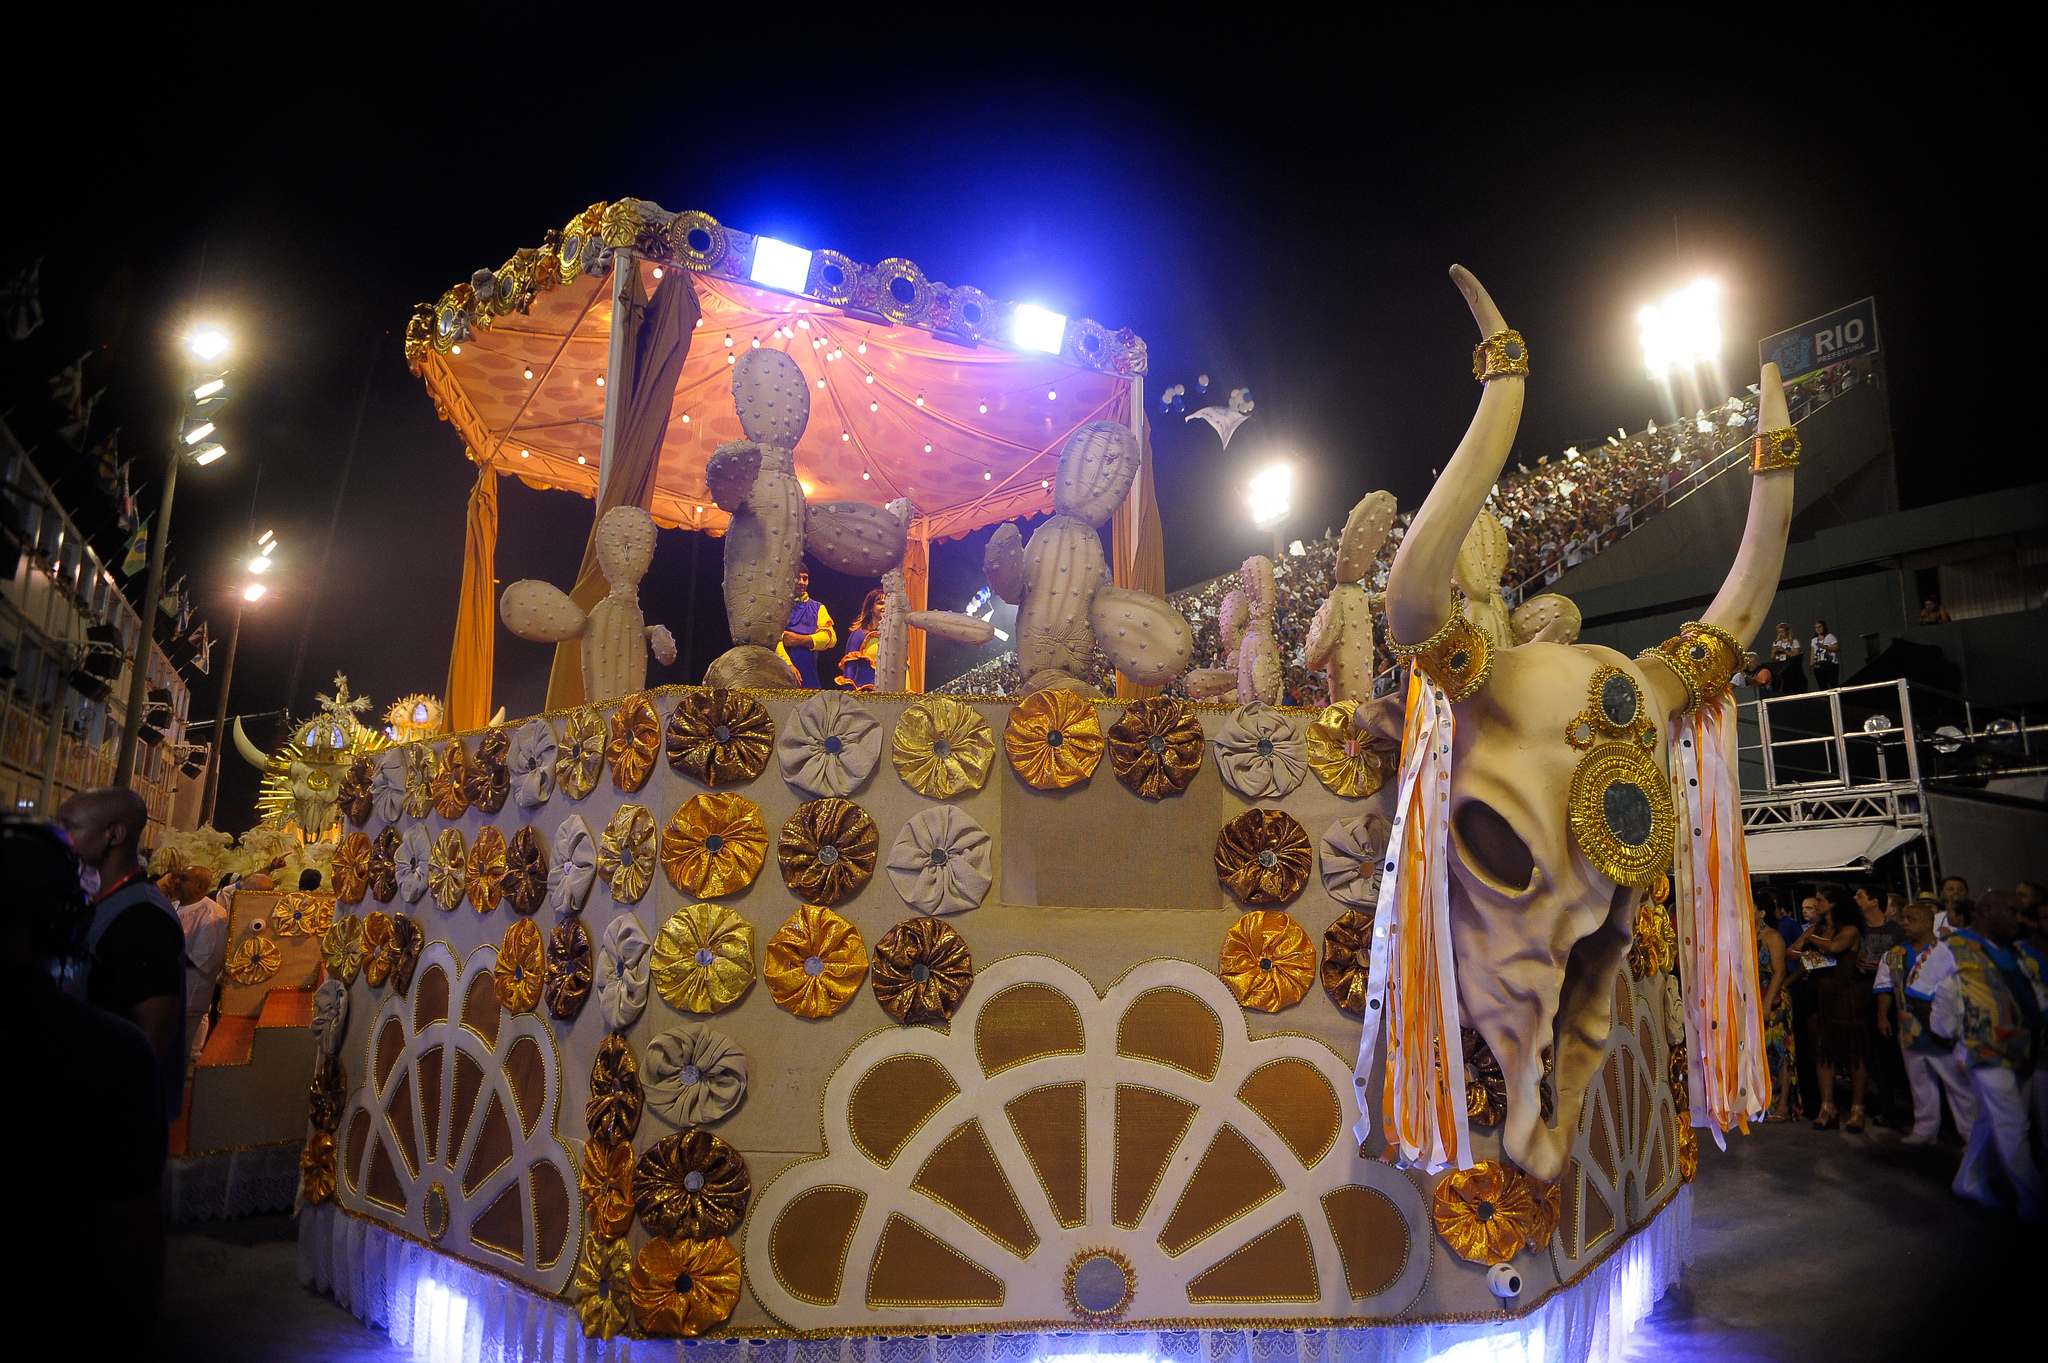 rio de janeiro 20168 Vila Isabel at Carnival in Rio de Janeiro